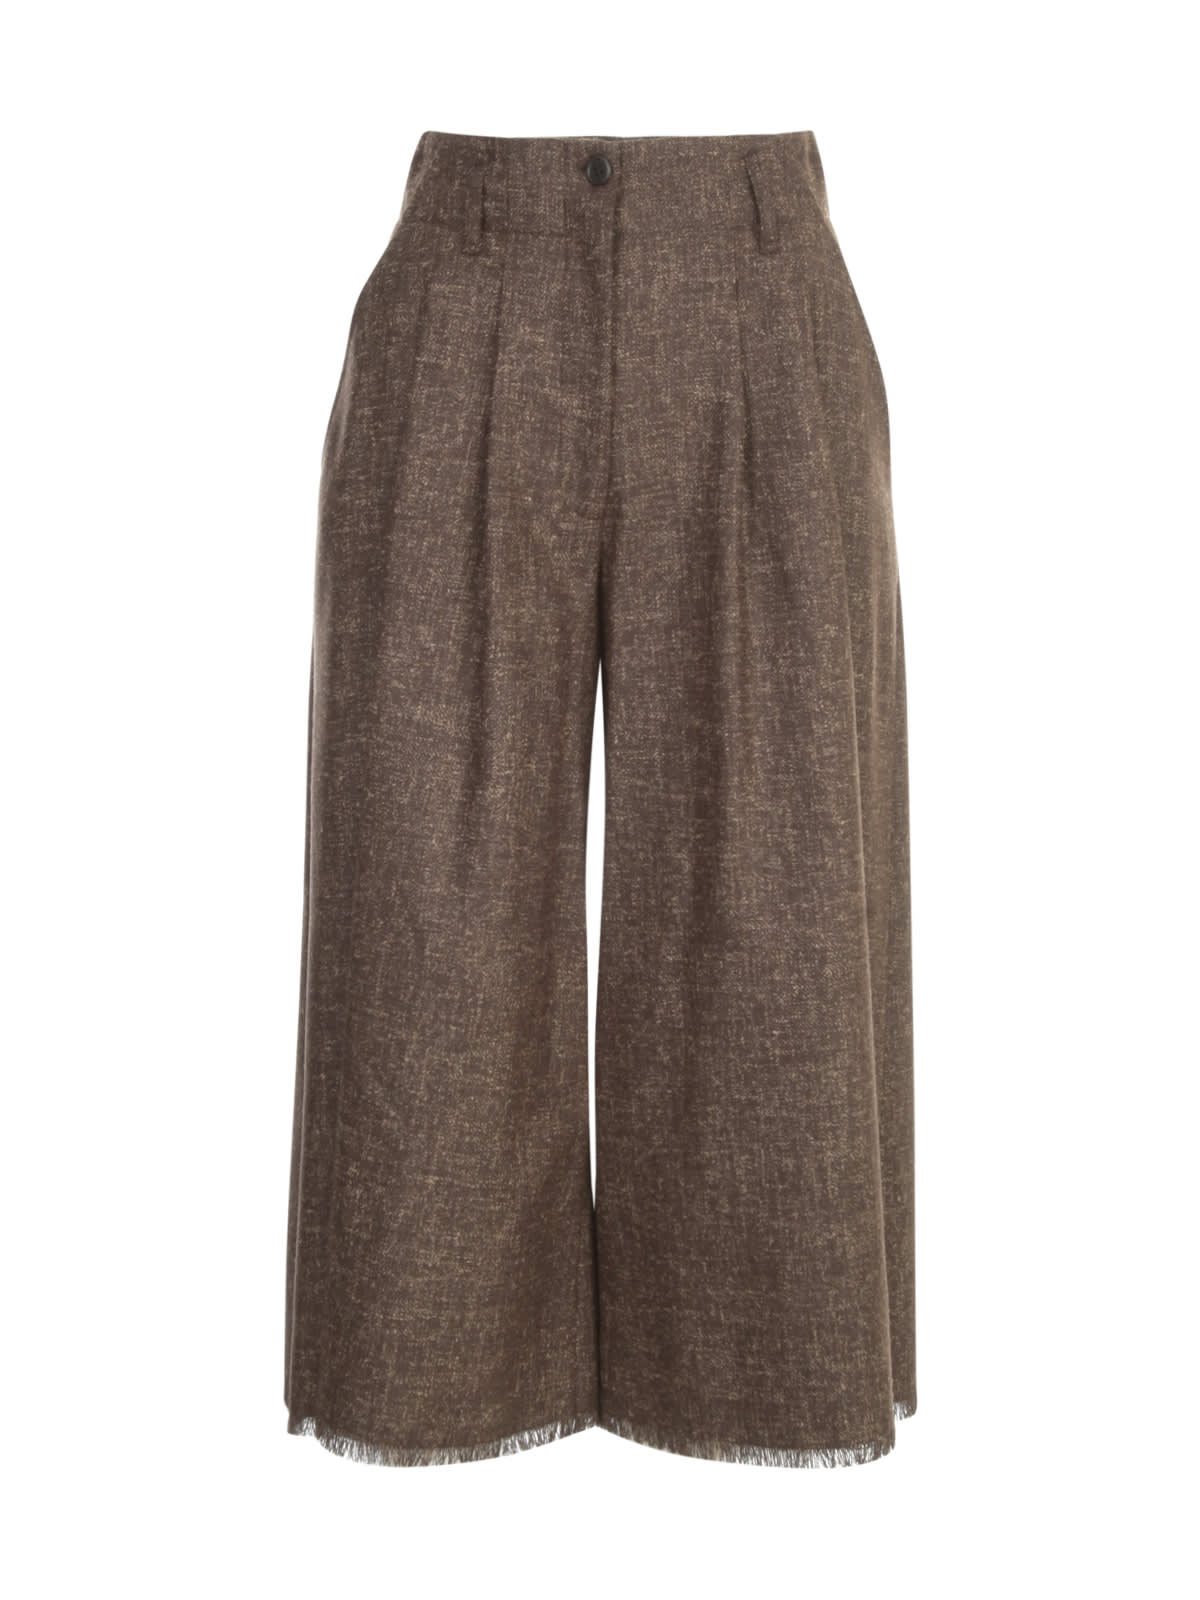 Antonelli Skirt Pants W/fringes On Bottom